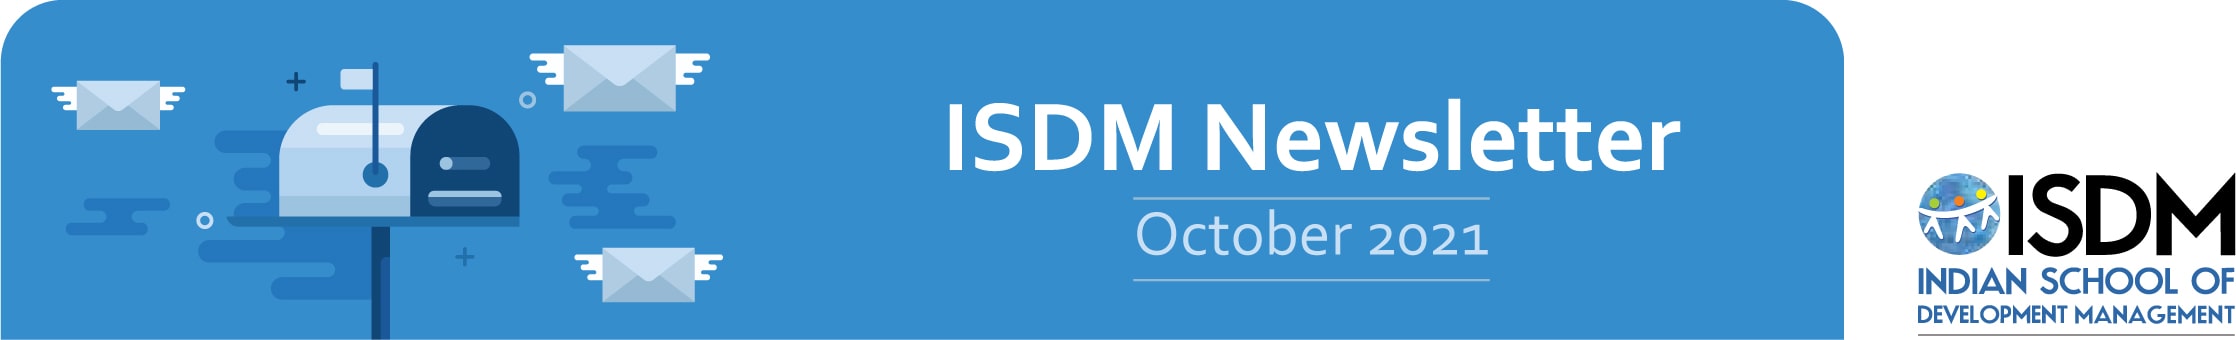 ISDM Newsletter October 2021